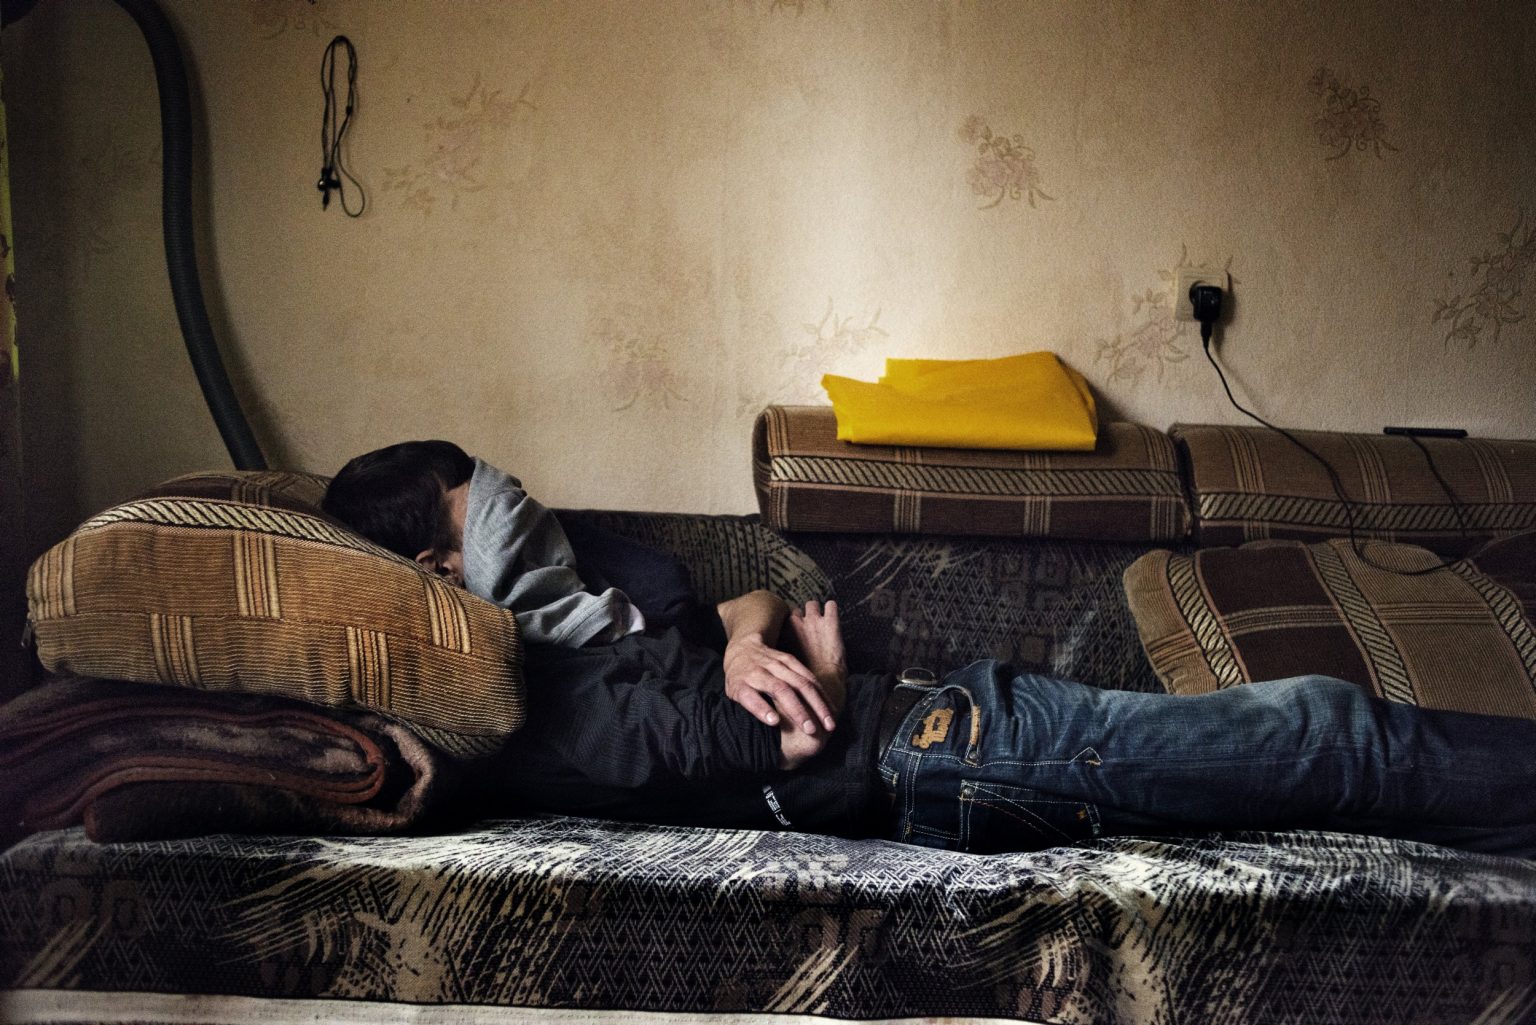 Yekaterinburg, Russia, November 2013 - Alexey lying in a bed immediately after taking a dose of Krokodil. ><
Yekaterinburg, Russia, novembre 2013 - Alexey giace steso su un letto dopo aver assunto della Krokodil.